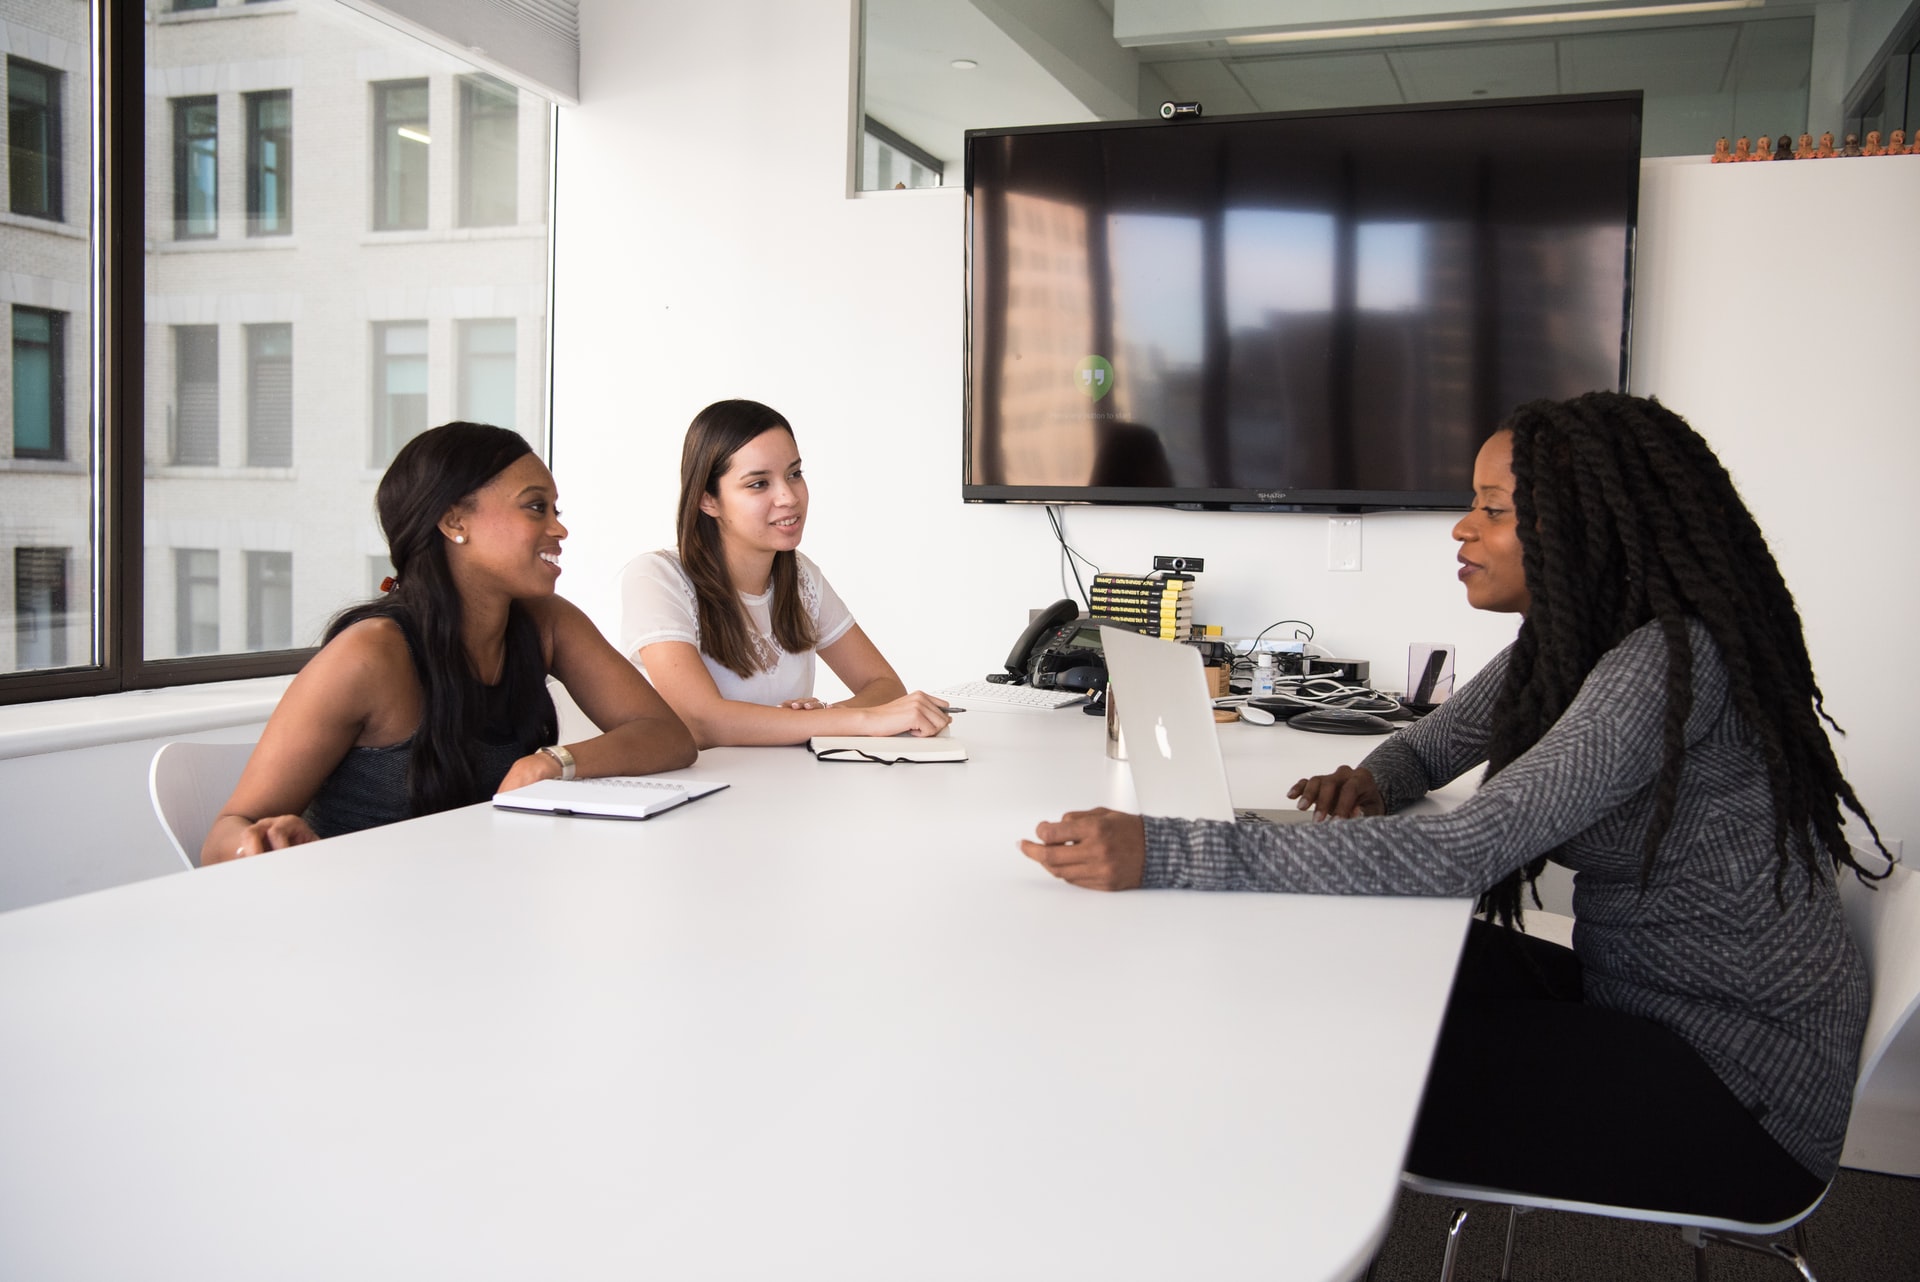 Empreendedorismo feminino: a imagem mostra uma mesa de reunião branca em frente a uma TV. Sentadas em frente a ela estão três jovens mulheres, duas negras e uma branca, conversando enquanto digitam em notebooks e escrevem em cadernos.